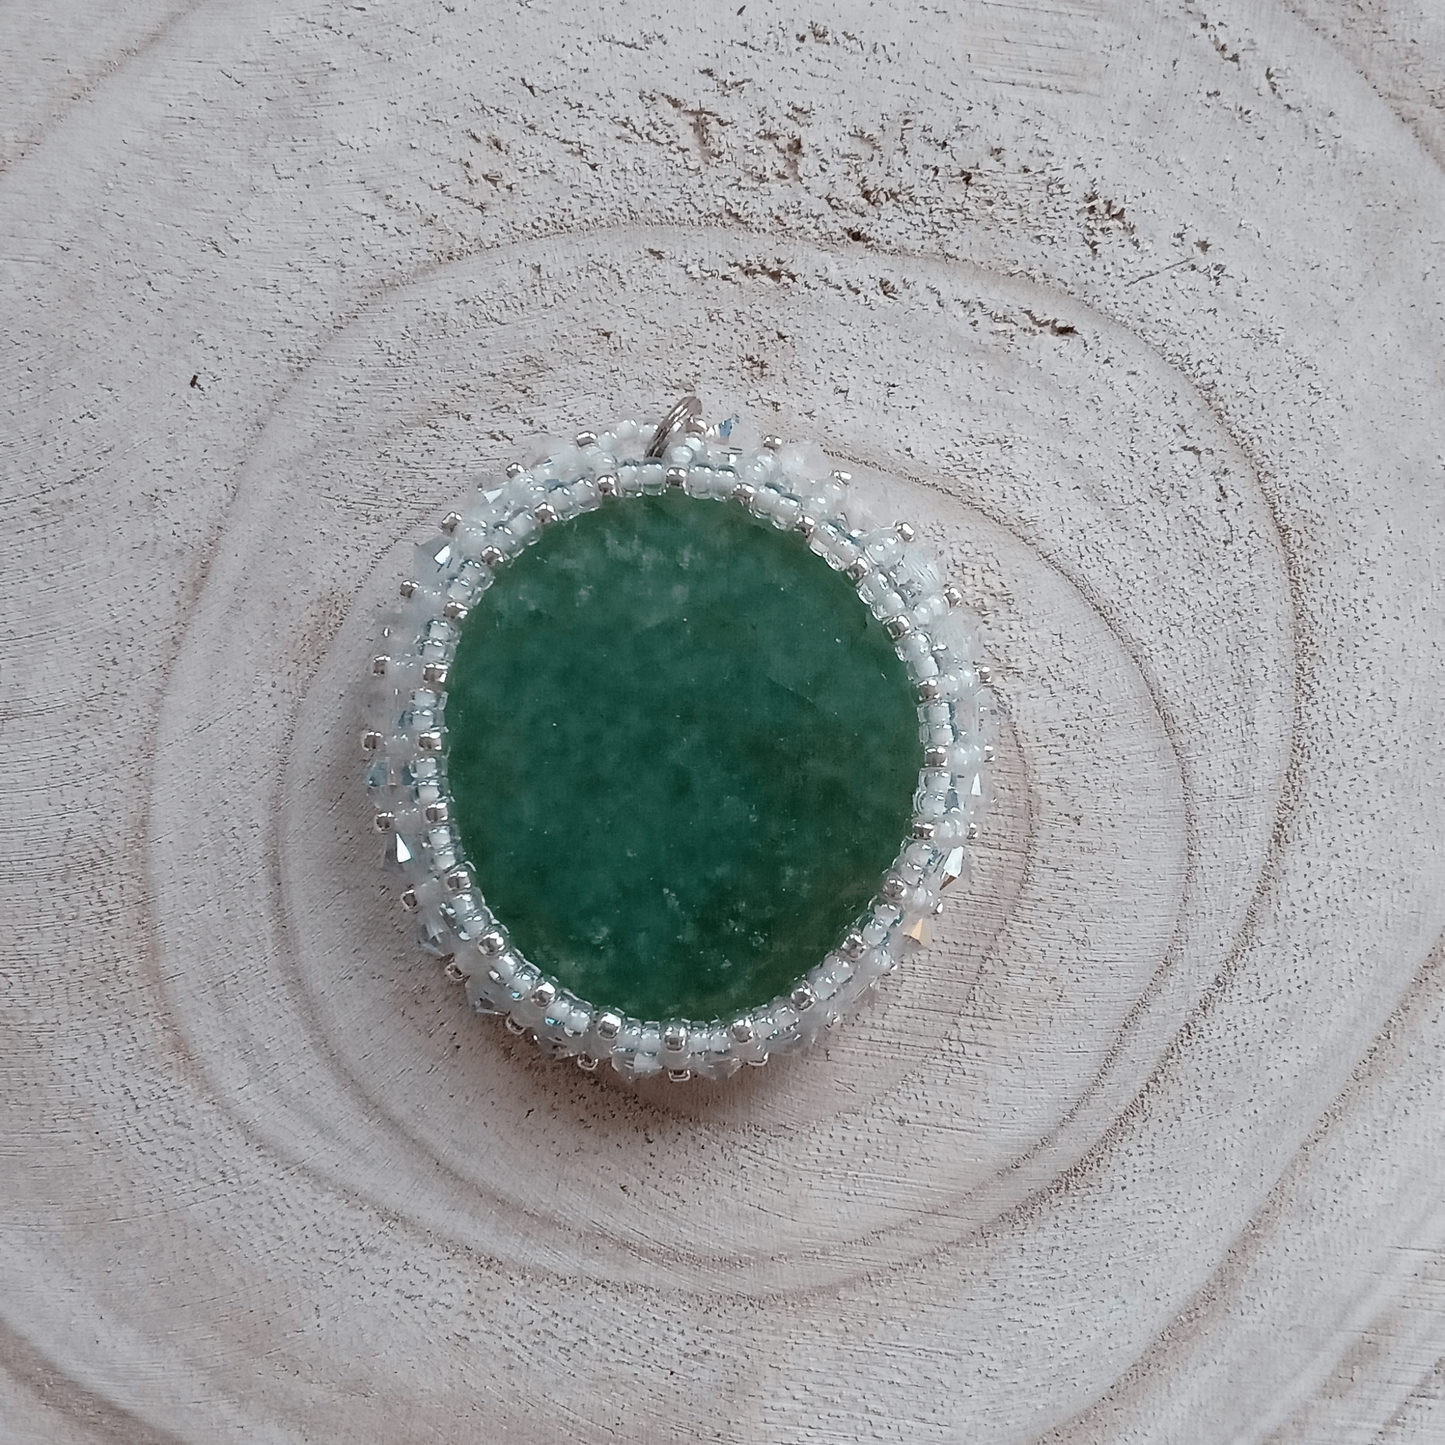 Green gemstone, aventurine